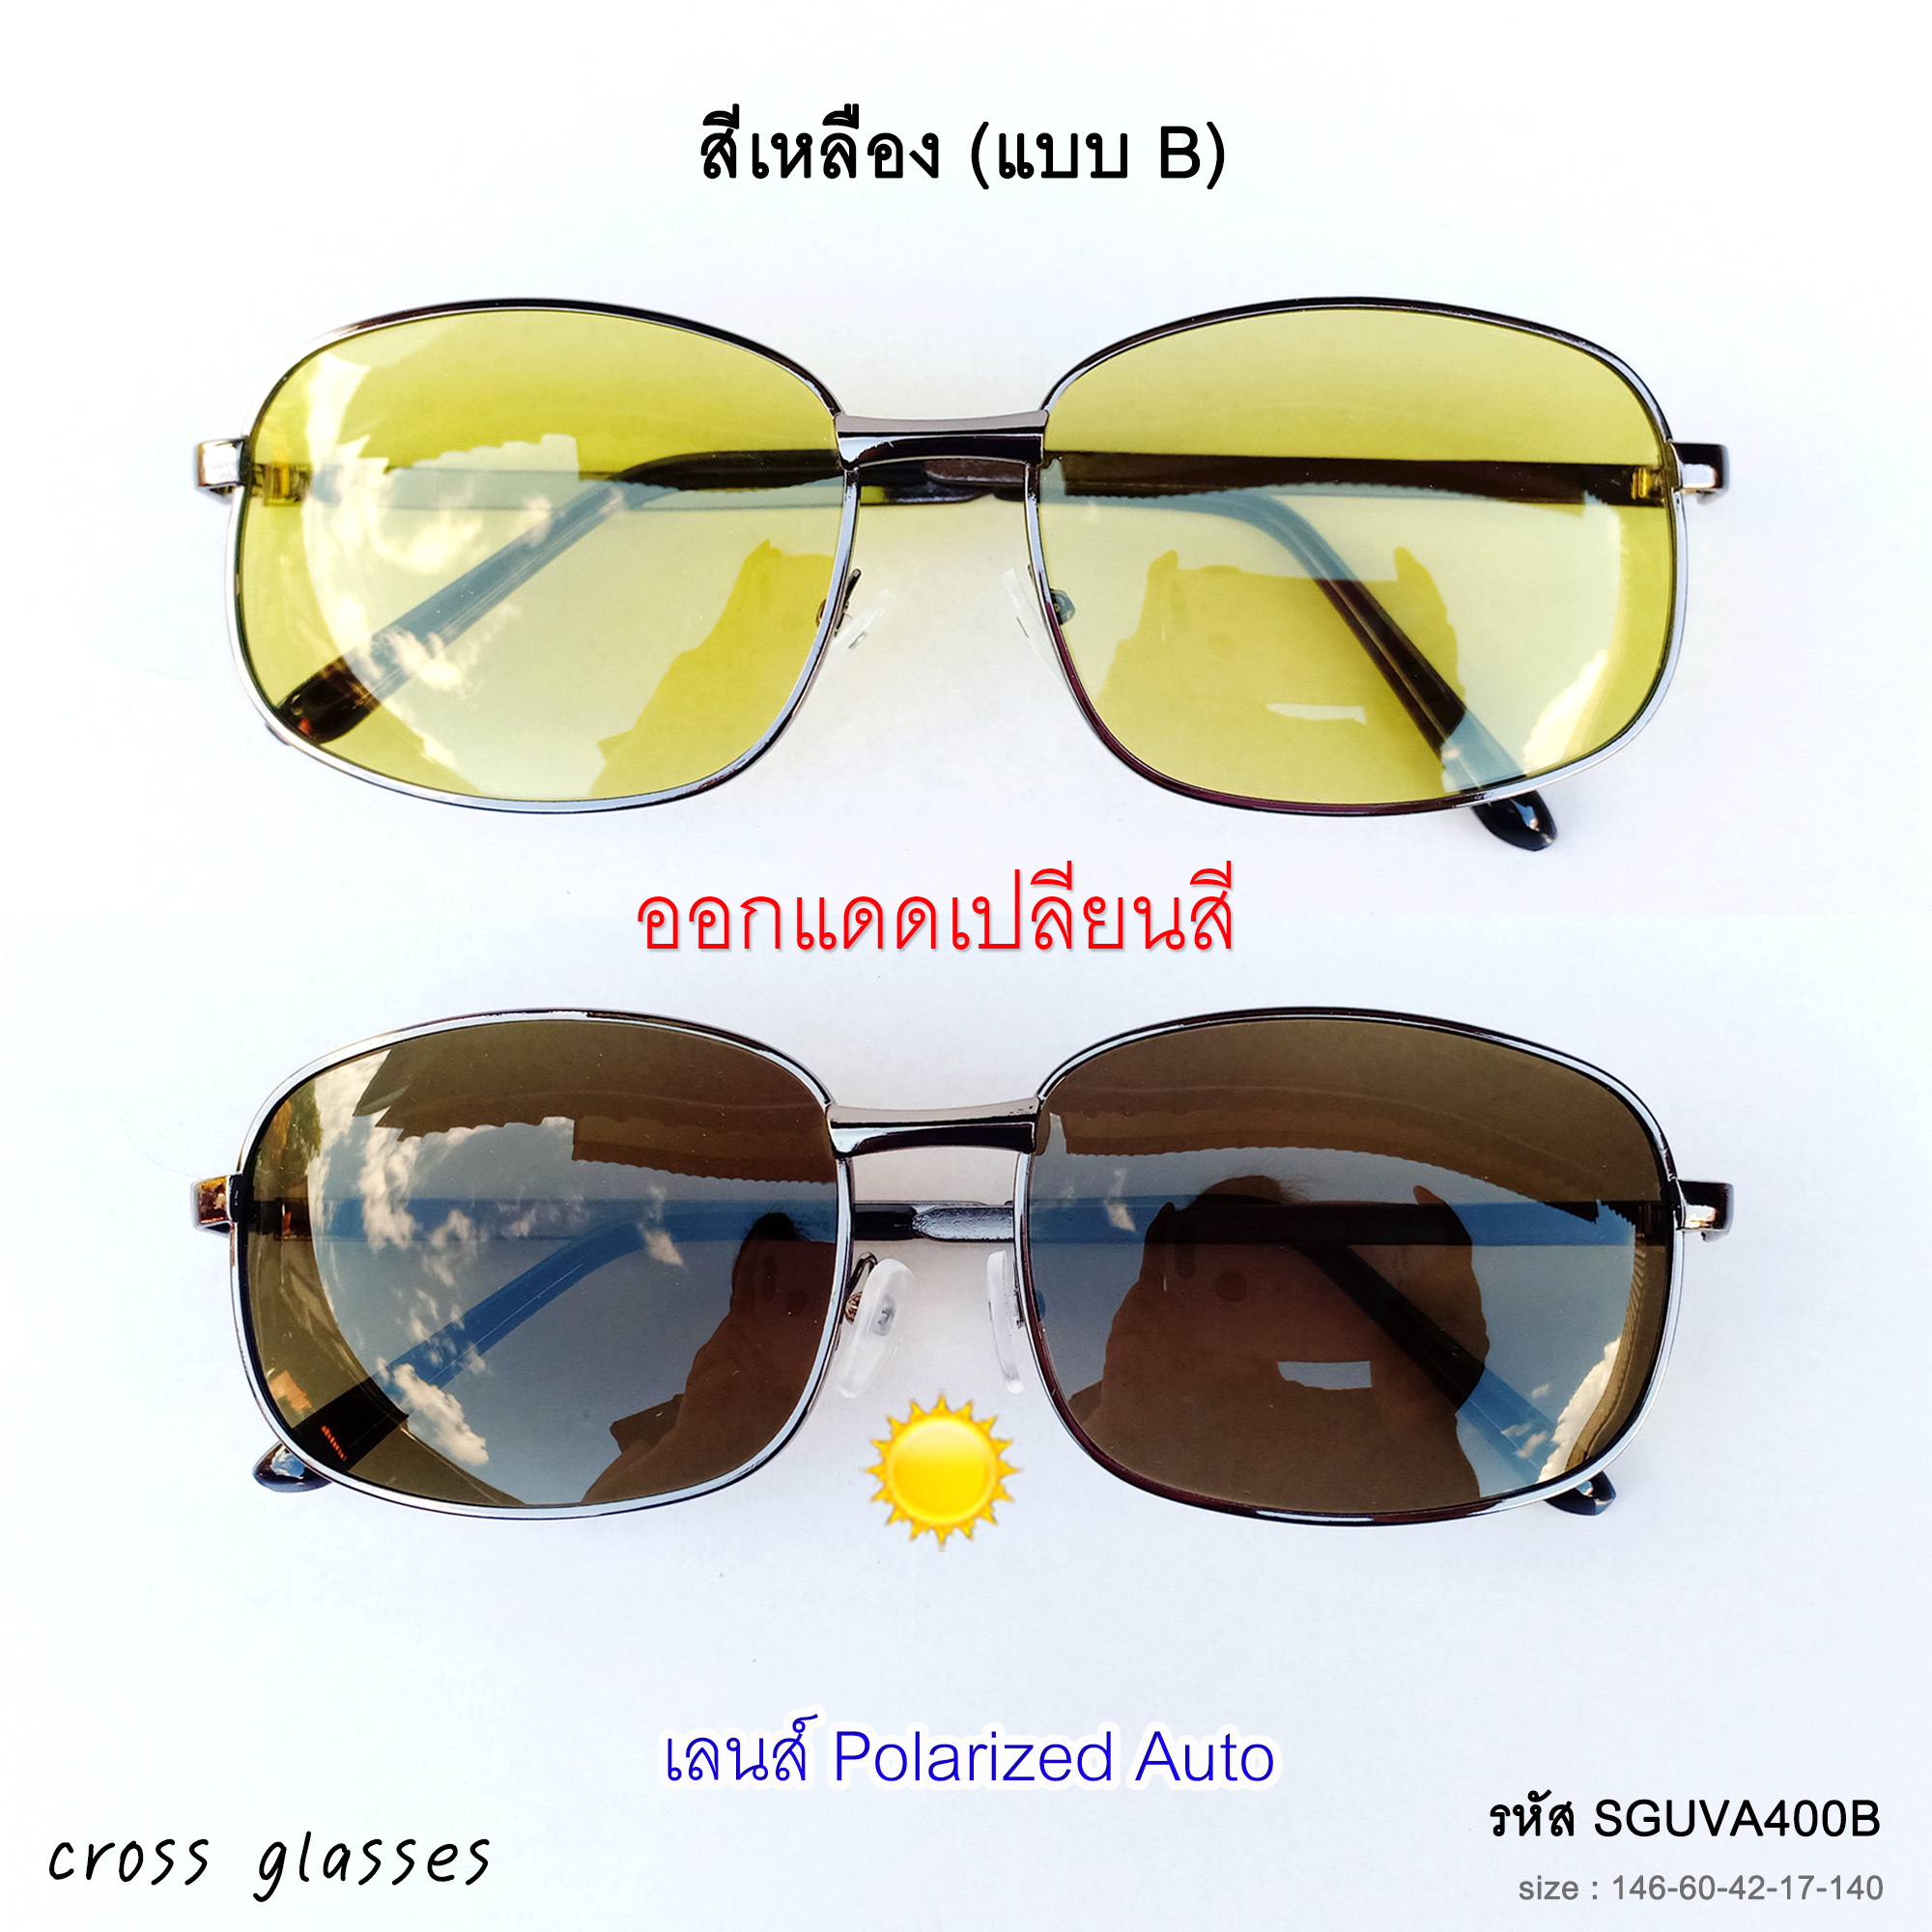 ข้อมูลเกี่ยวกับ แว่นตากันแดด เลนส์ Polarized Auto ออกแดดเปลี่ยนสี แว่นตาขับรถ รหัส SGUVA400